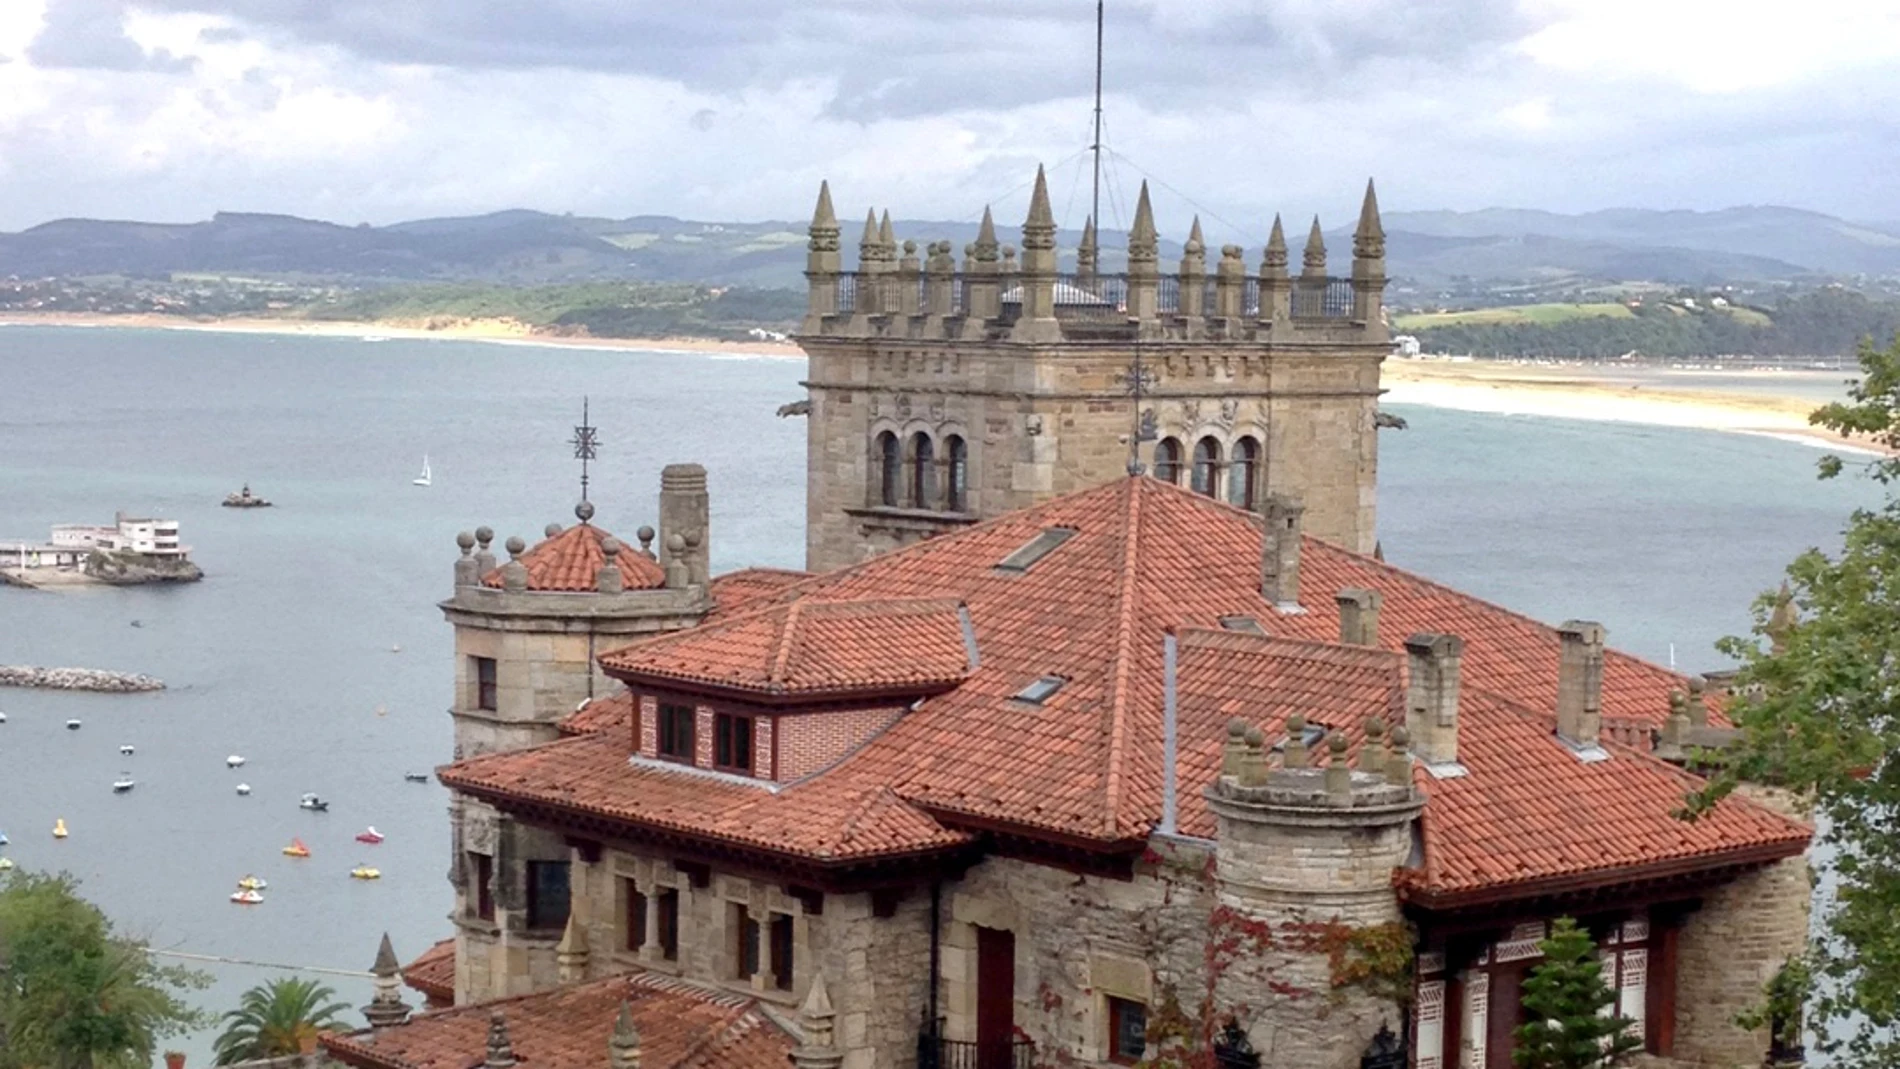 Vista de la Casa-Palacio El Promontorio.de estilo montañés realizada el 1915 en Santander